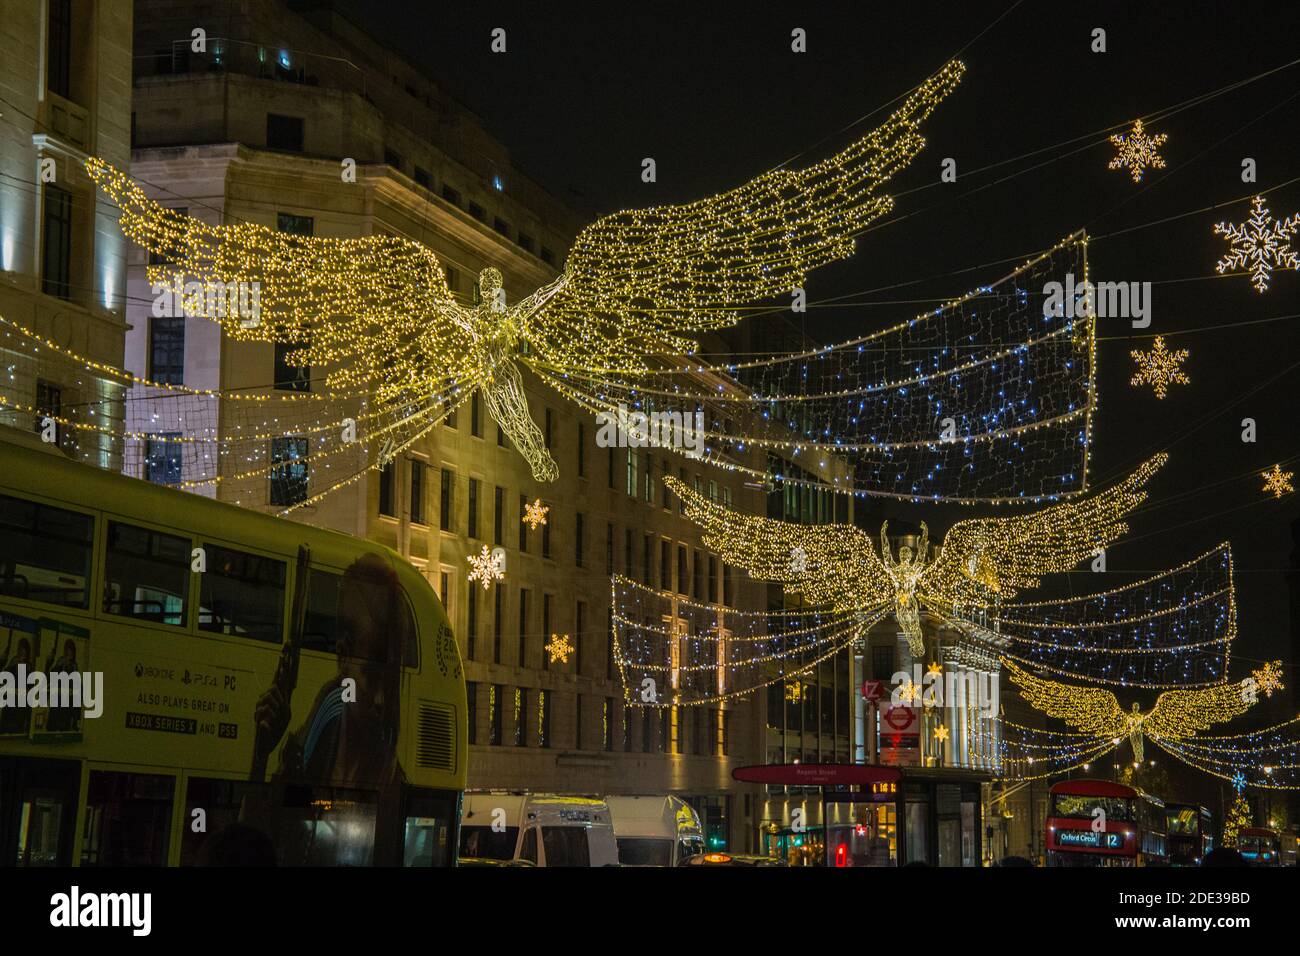 London Großbritannien 28. November 2020 große Menschenmengen kommen nach London Um die wunderbaren Weihnachtslichter und das wunderbare Fortum zu genießen Und Mason Store dekoriert wie ein Adventskalender.Paul Quezada-Neiman/Alamy Live Nachrichten Stockfoto